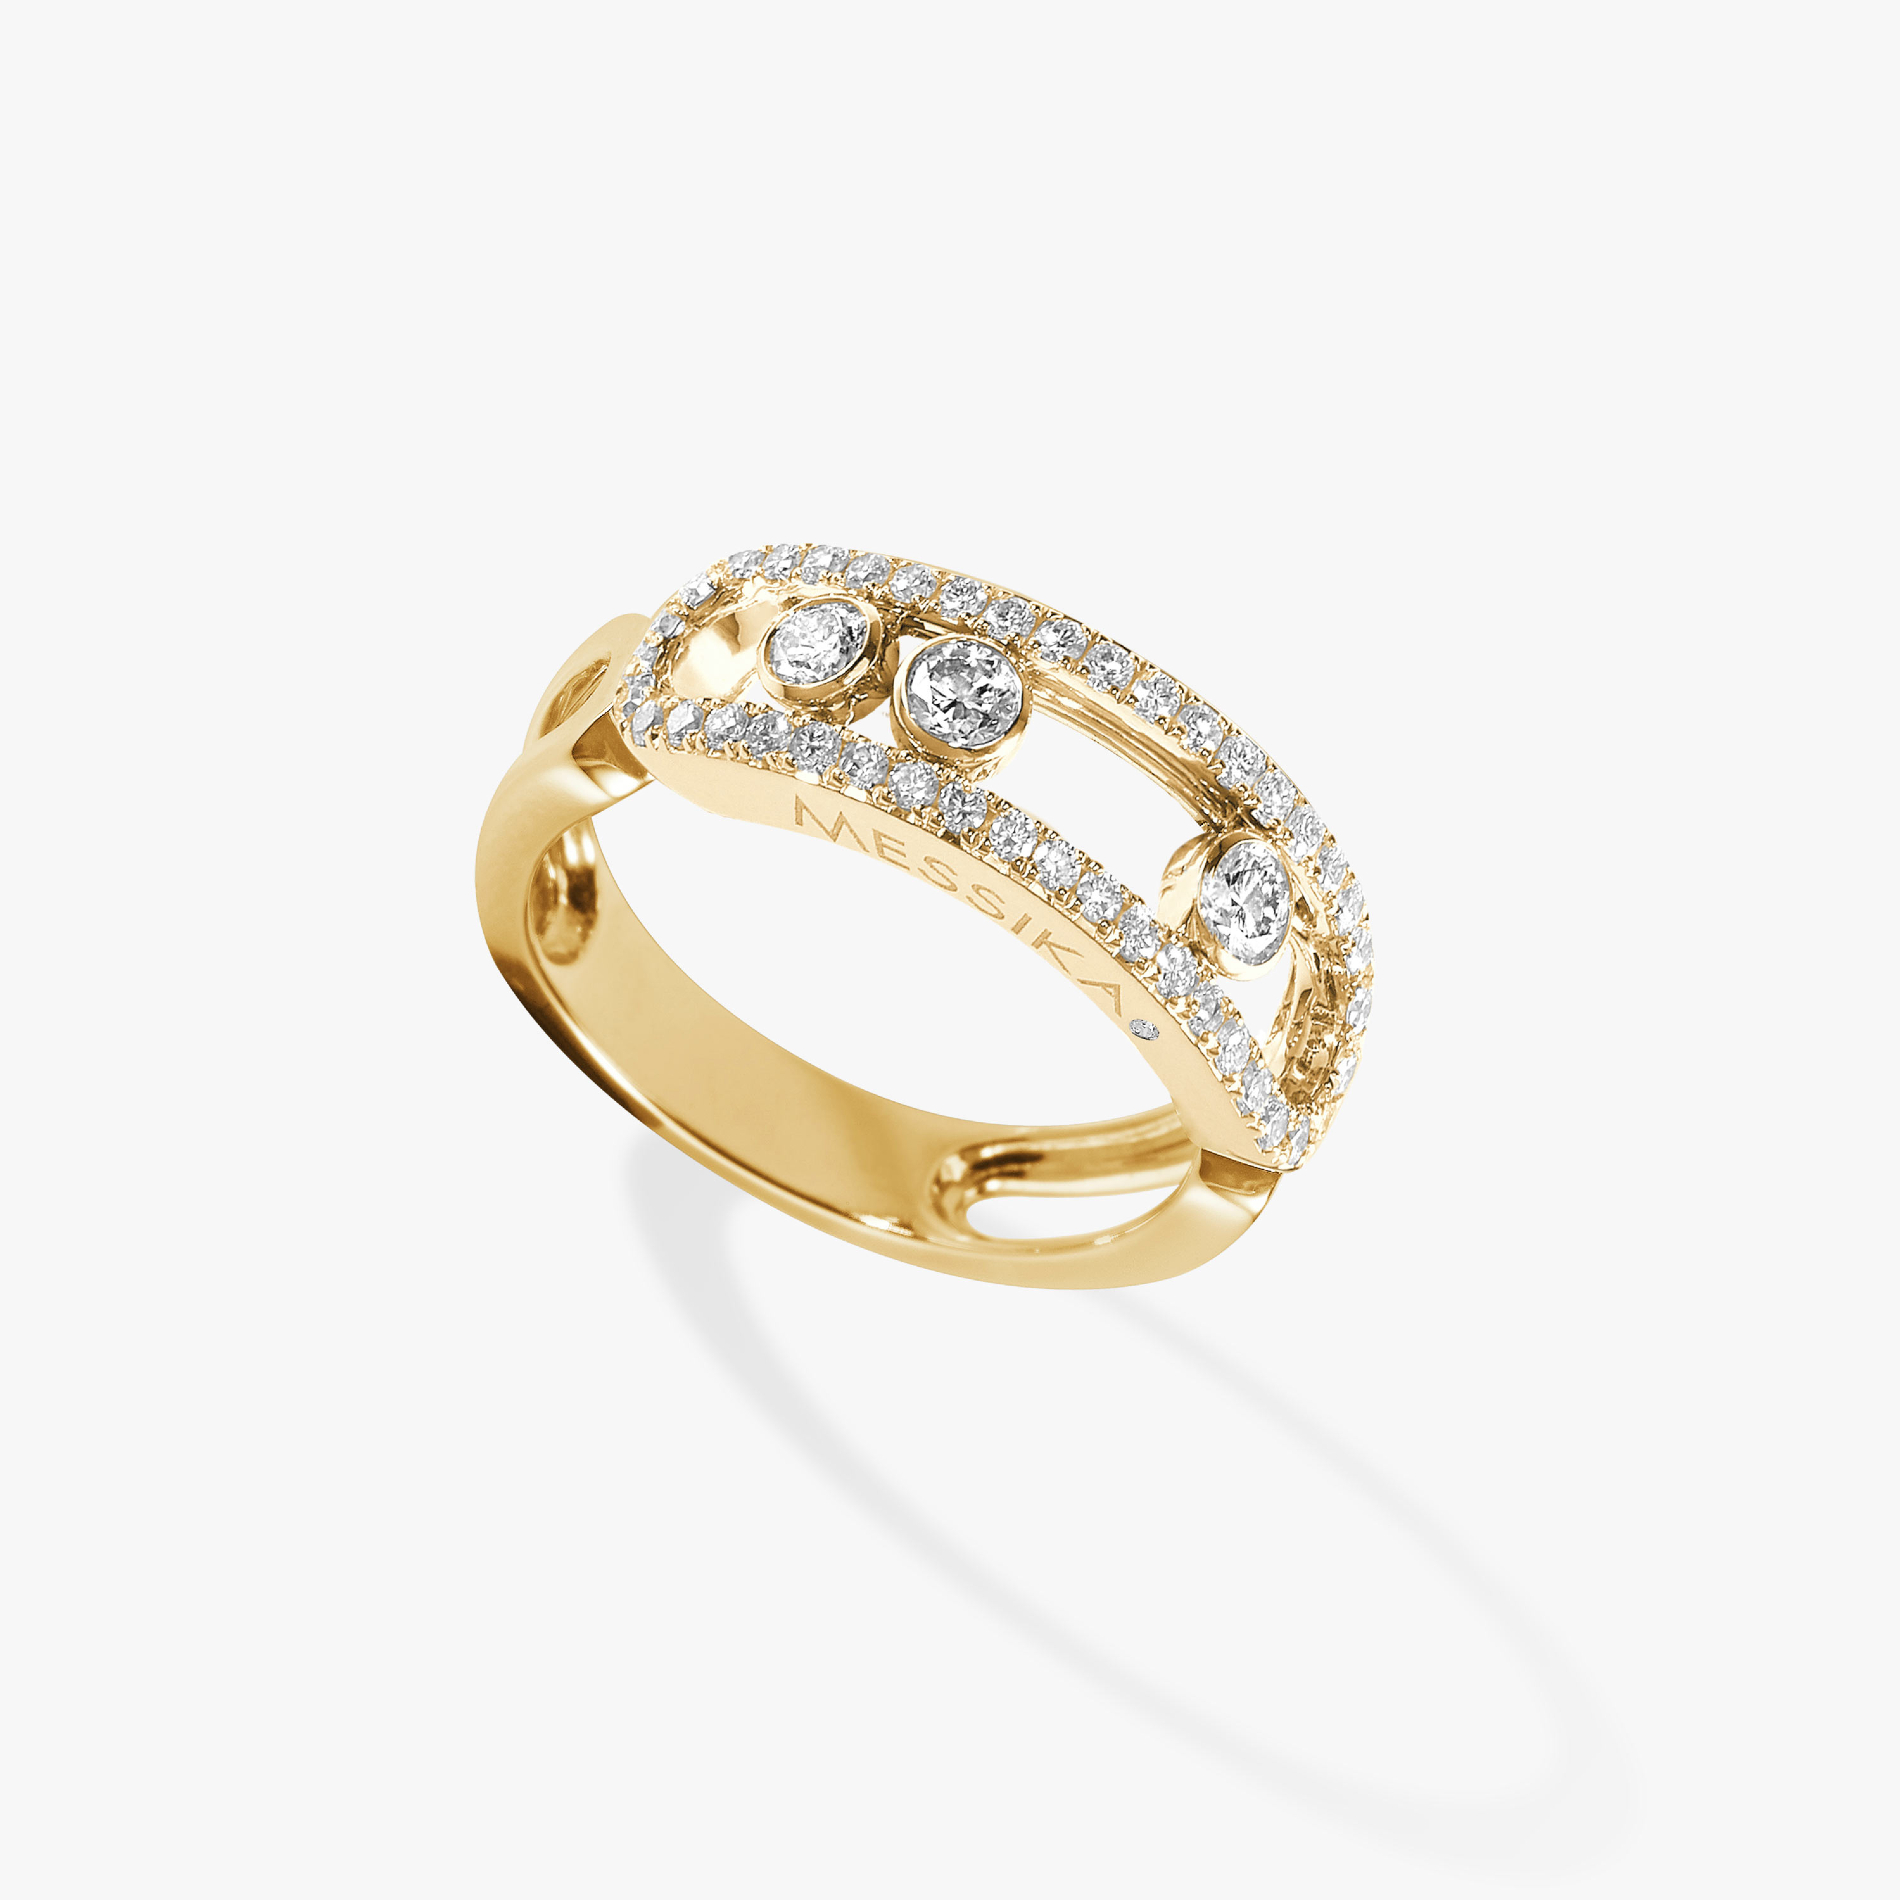 Bague Femme Or Jaune Diamant Move Classique Pavée 04000-YG